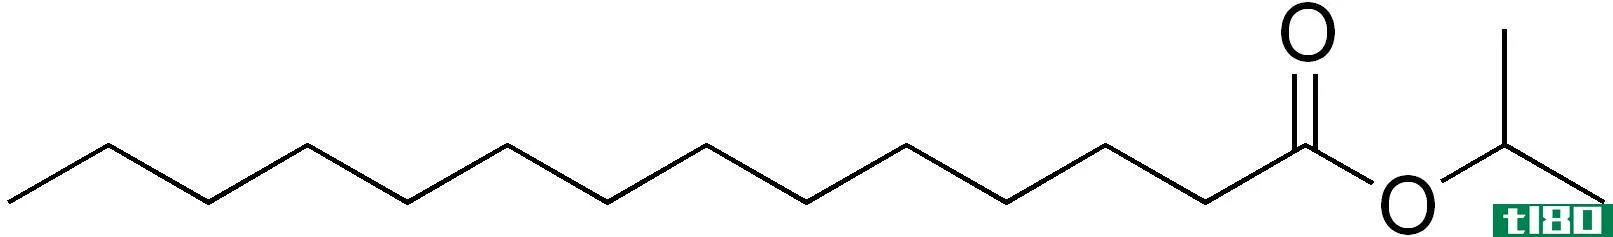 肉豆蔻酸异丙酯(isopropyl myristate)和棕榈酸异丙酯(isopropyl palmitate)的区别